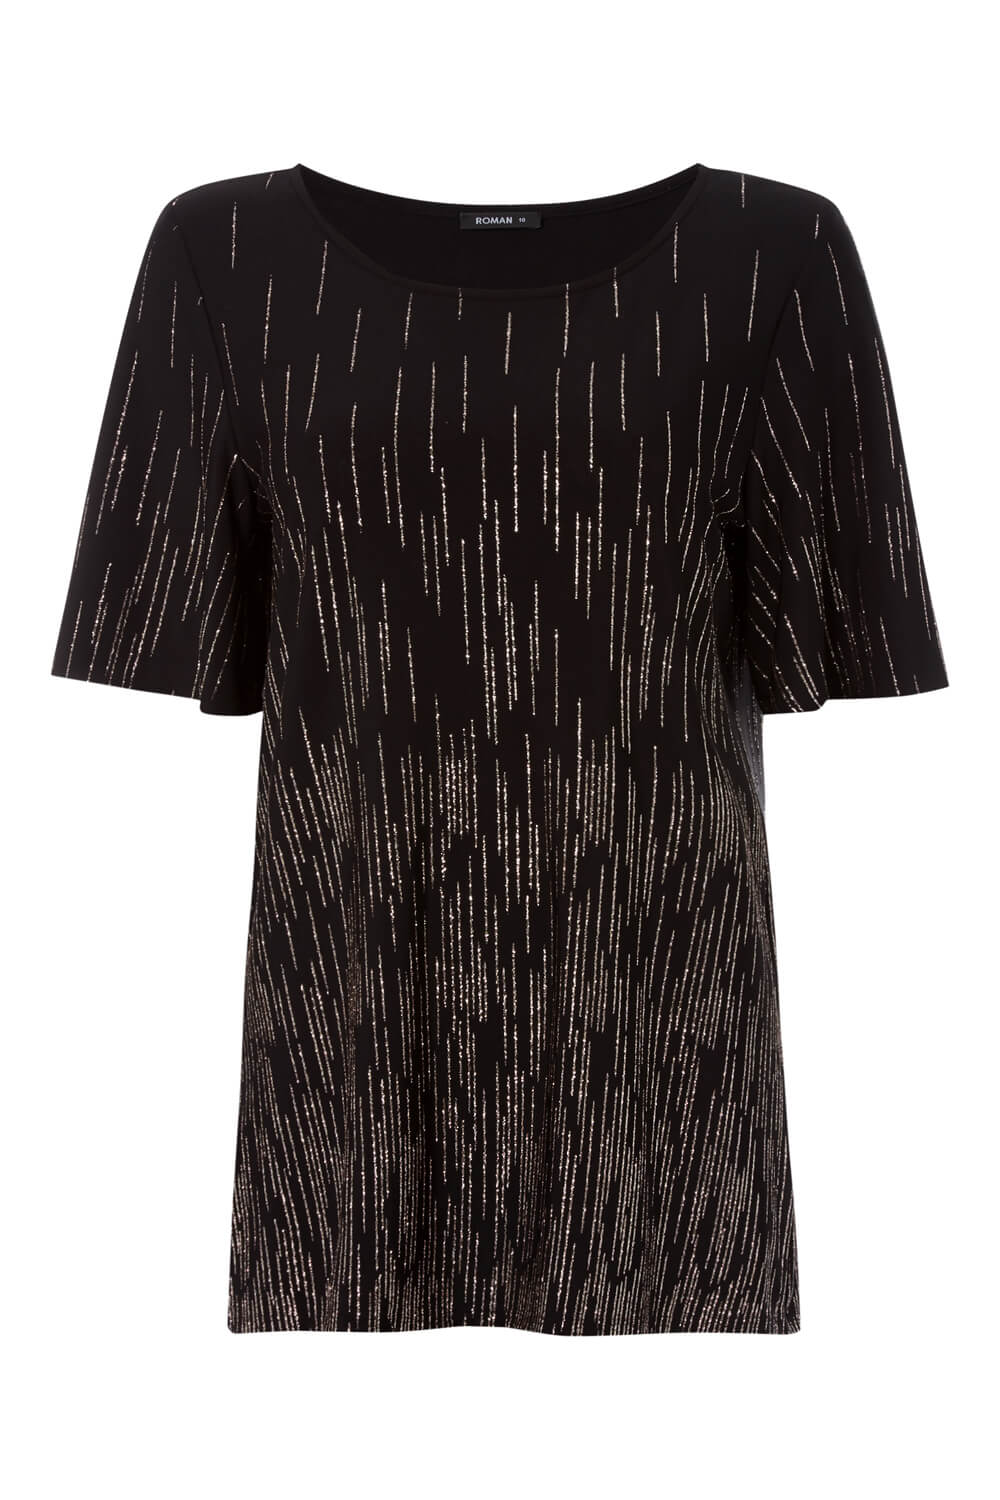 Black Short Sleeve Glitter Embellished Top, Image 4 of 4